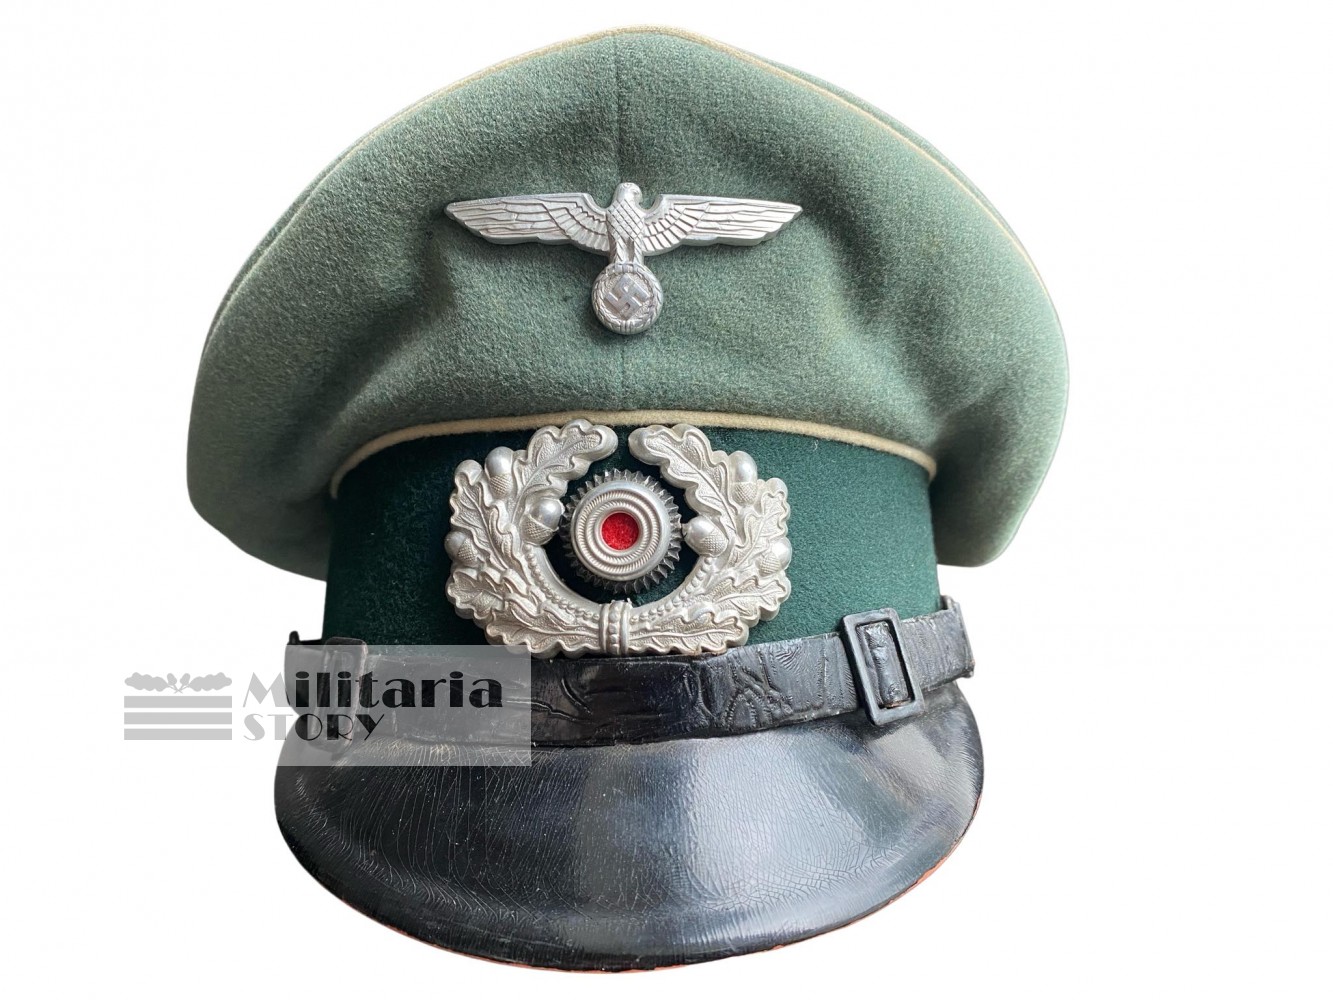 Heer NCO Infantry visor cap - Heer NCO Infantry visor cap: Third Reich Headgear